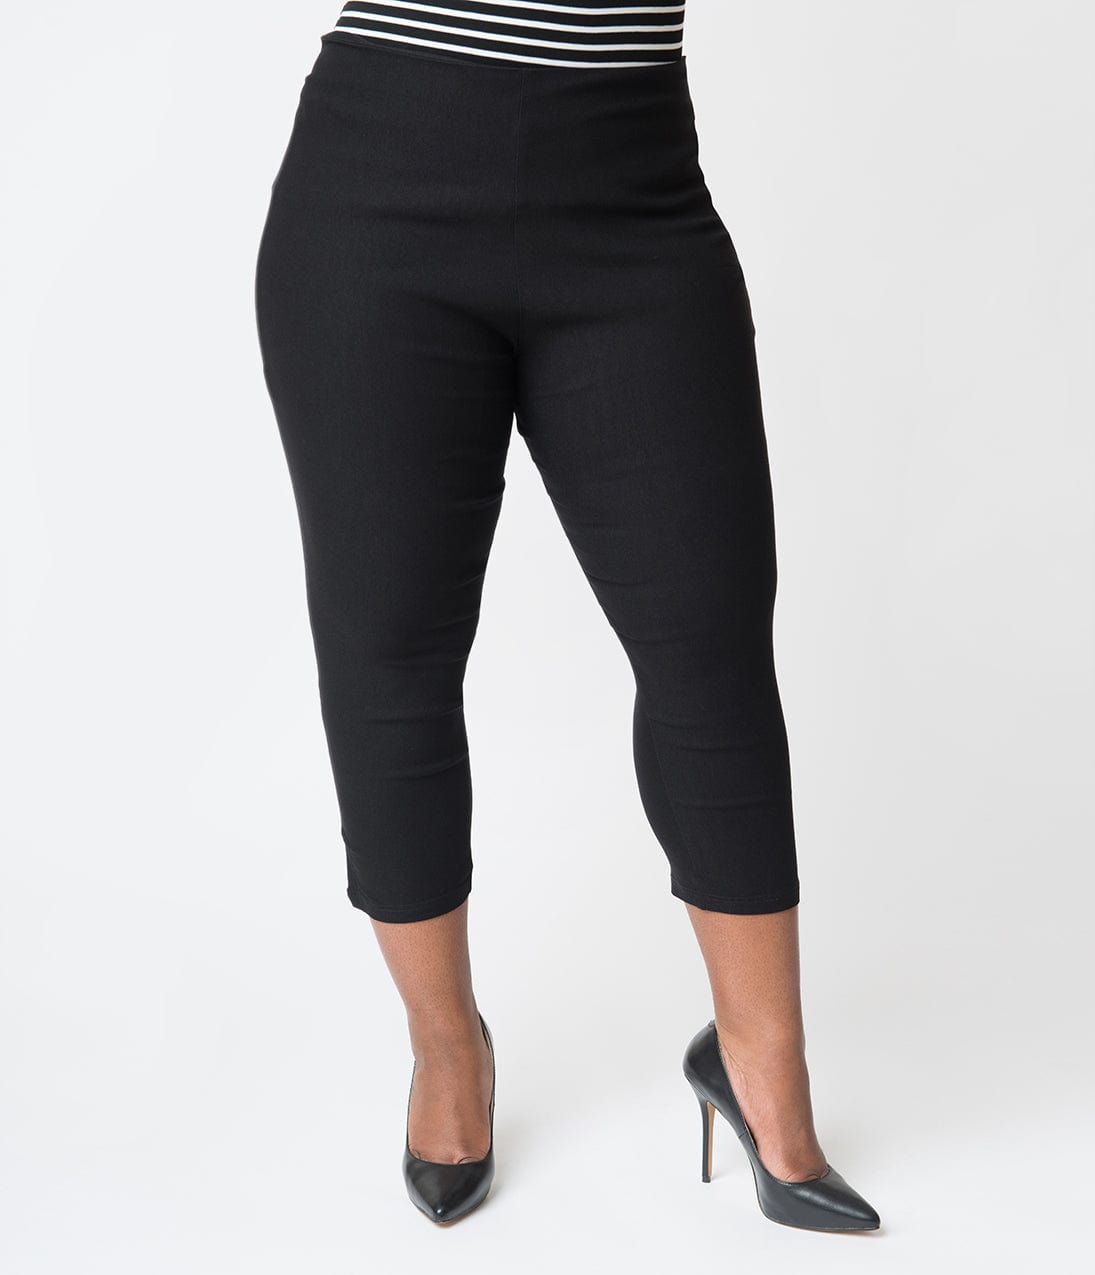 https://www.unique-vintage.com/cdn/shop/products/unique-vintage-plus-size-1950s-black-high-waist-rachelle-capri-pants-473344.jpg?v=1703099729&width=1920